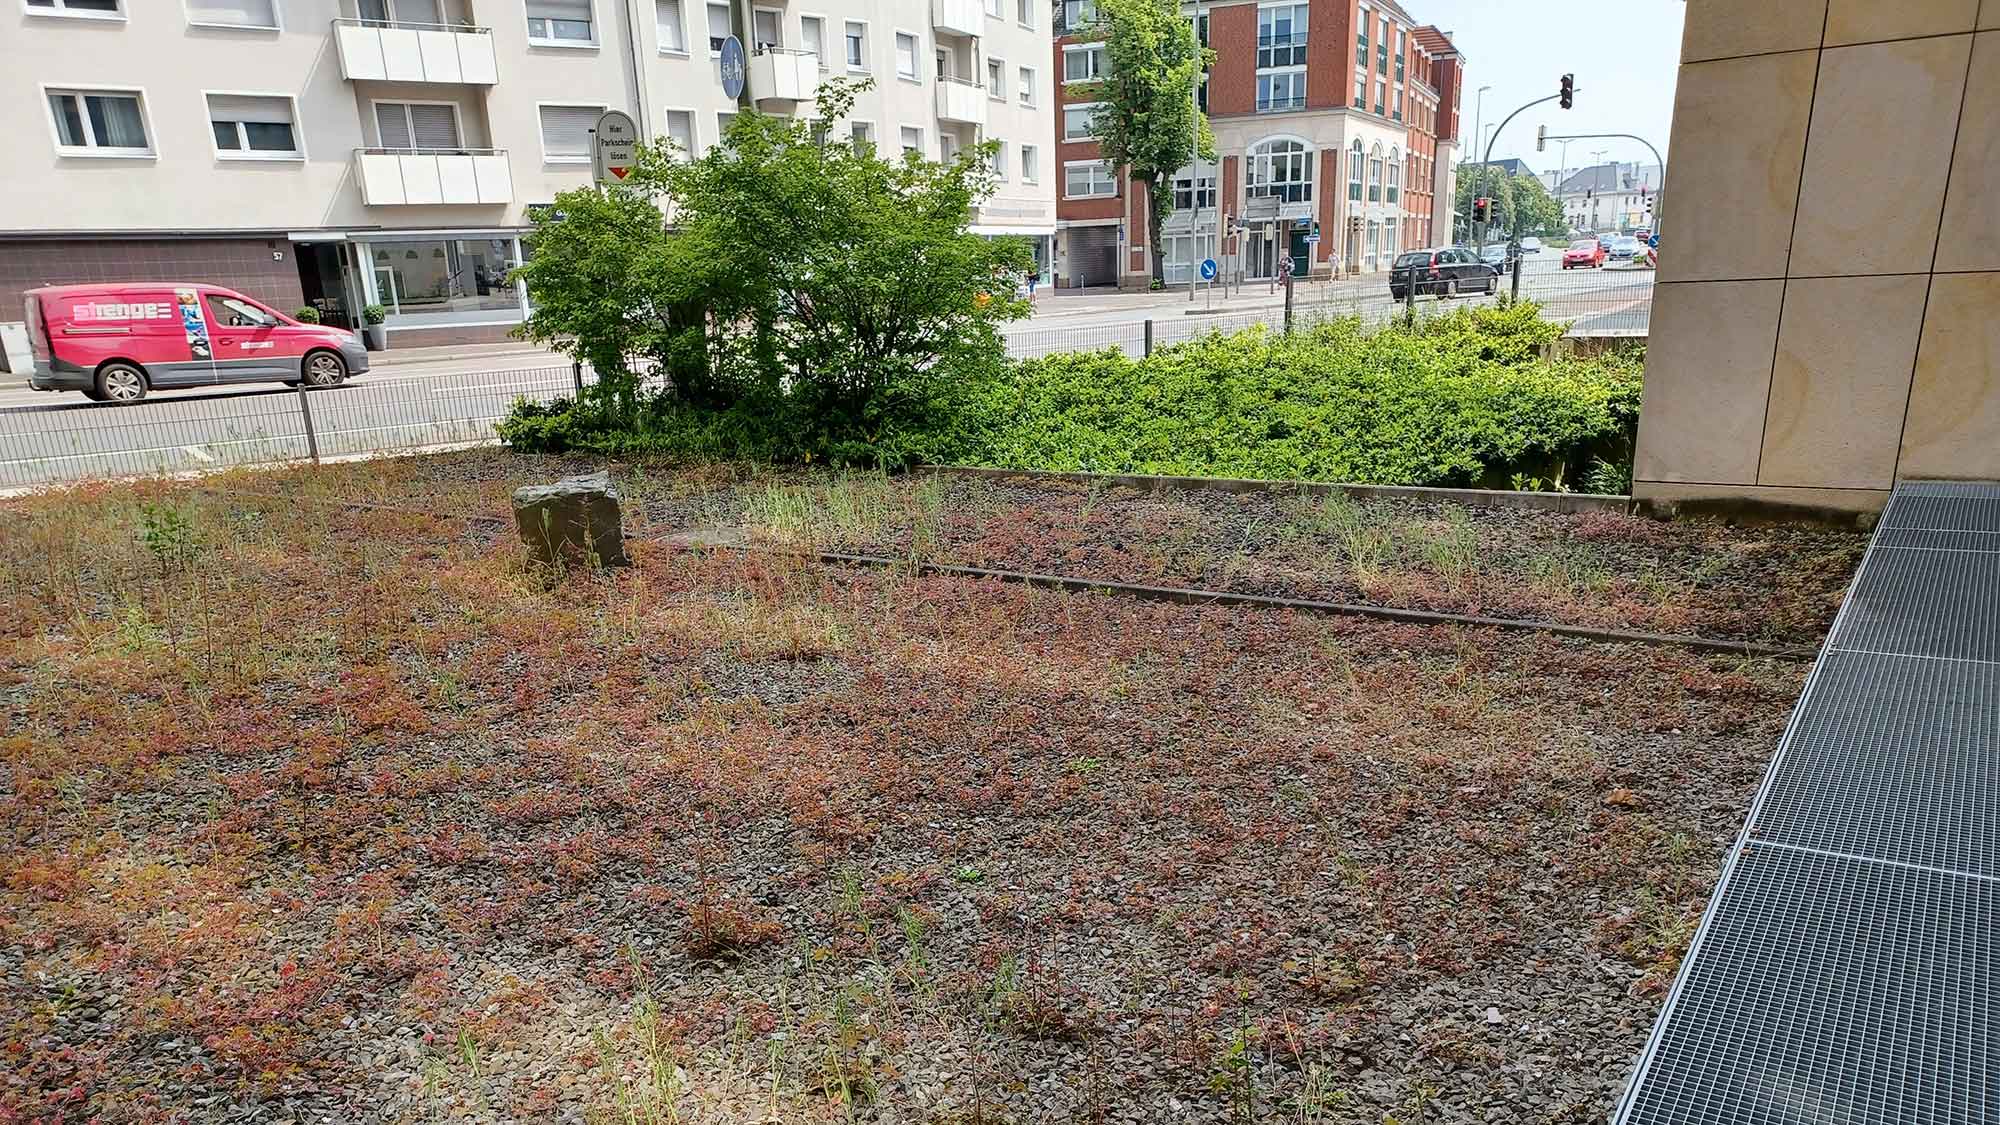 Güterslohs schönste Schottergärten: Neue Vorgartensatzung – Rathaus geht mit gutem Beispiel voran